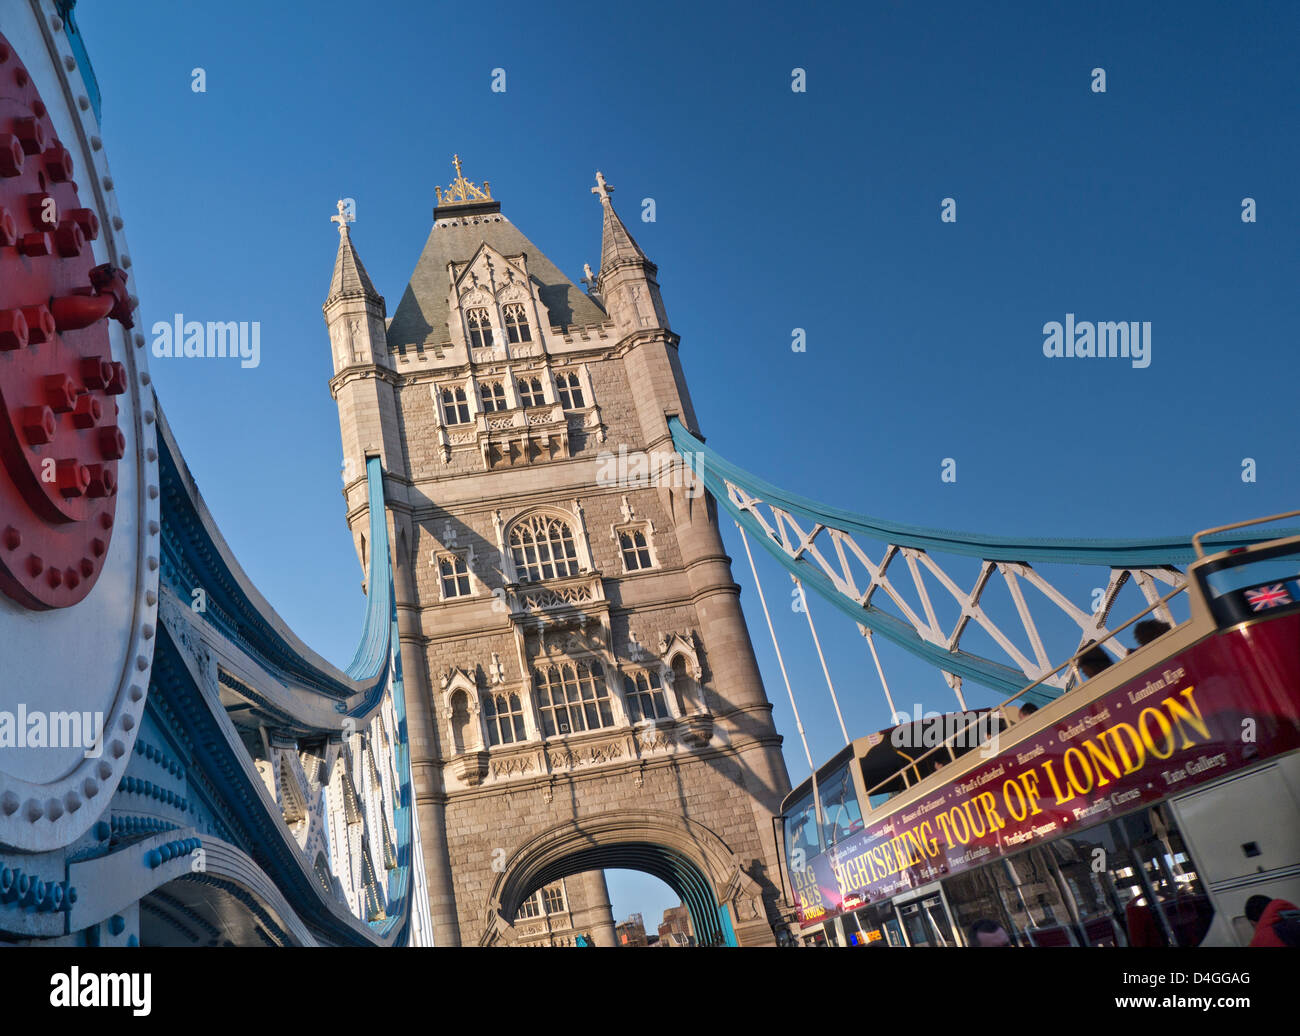 London Staycation Tower Bridge et visite touristique officielle de Londres Bus Southwark Londres Royaume-Uni Banque D'Images